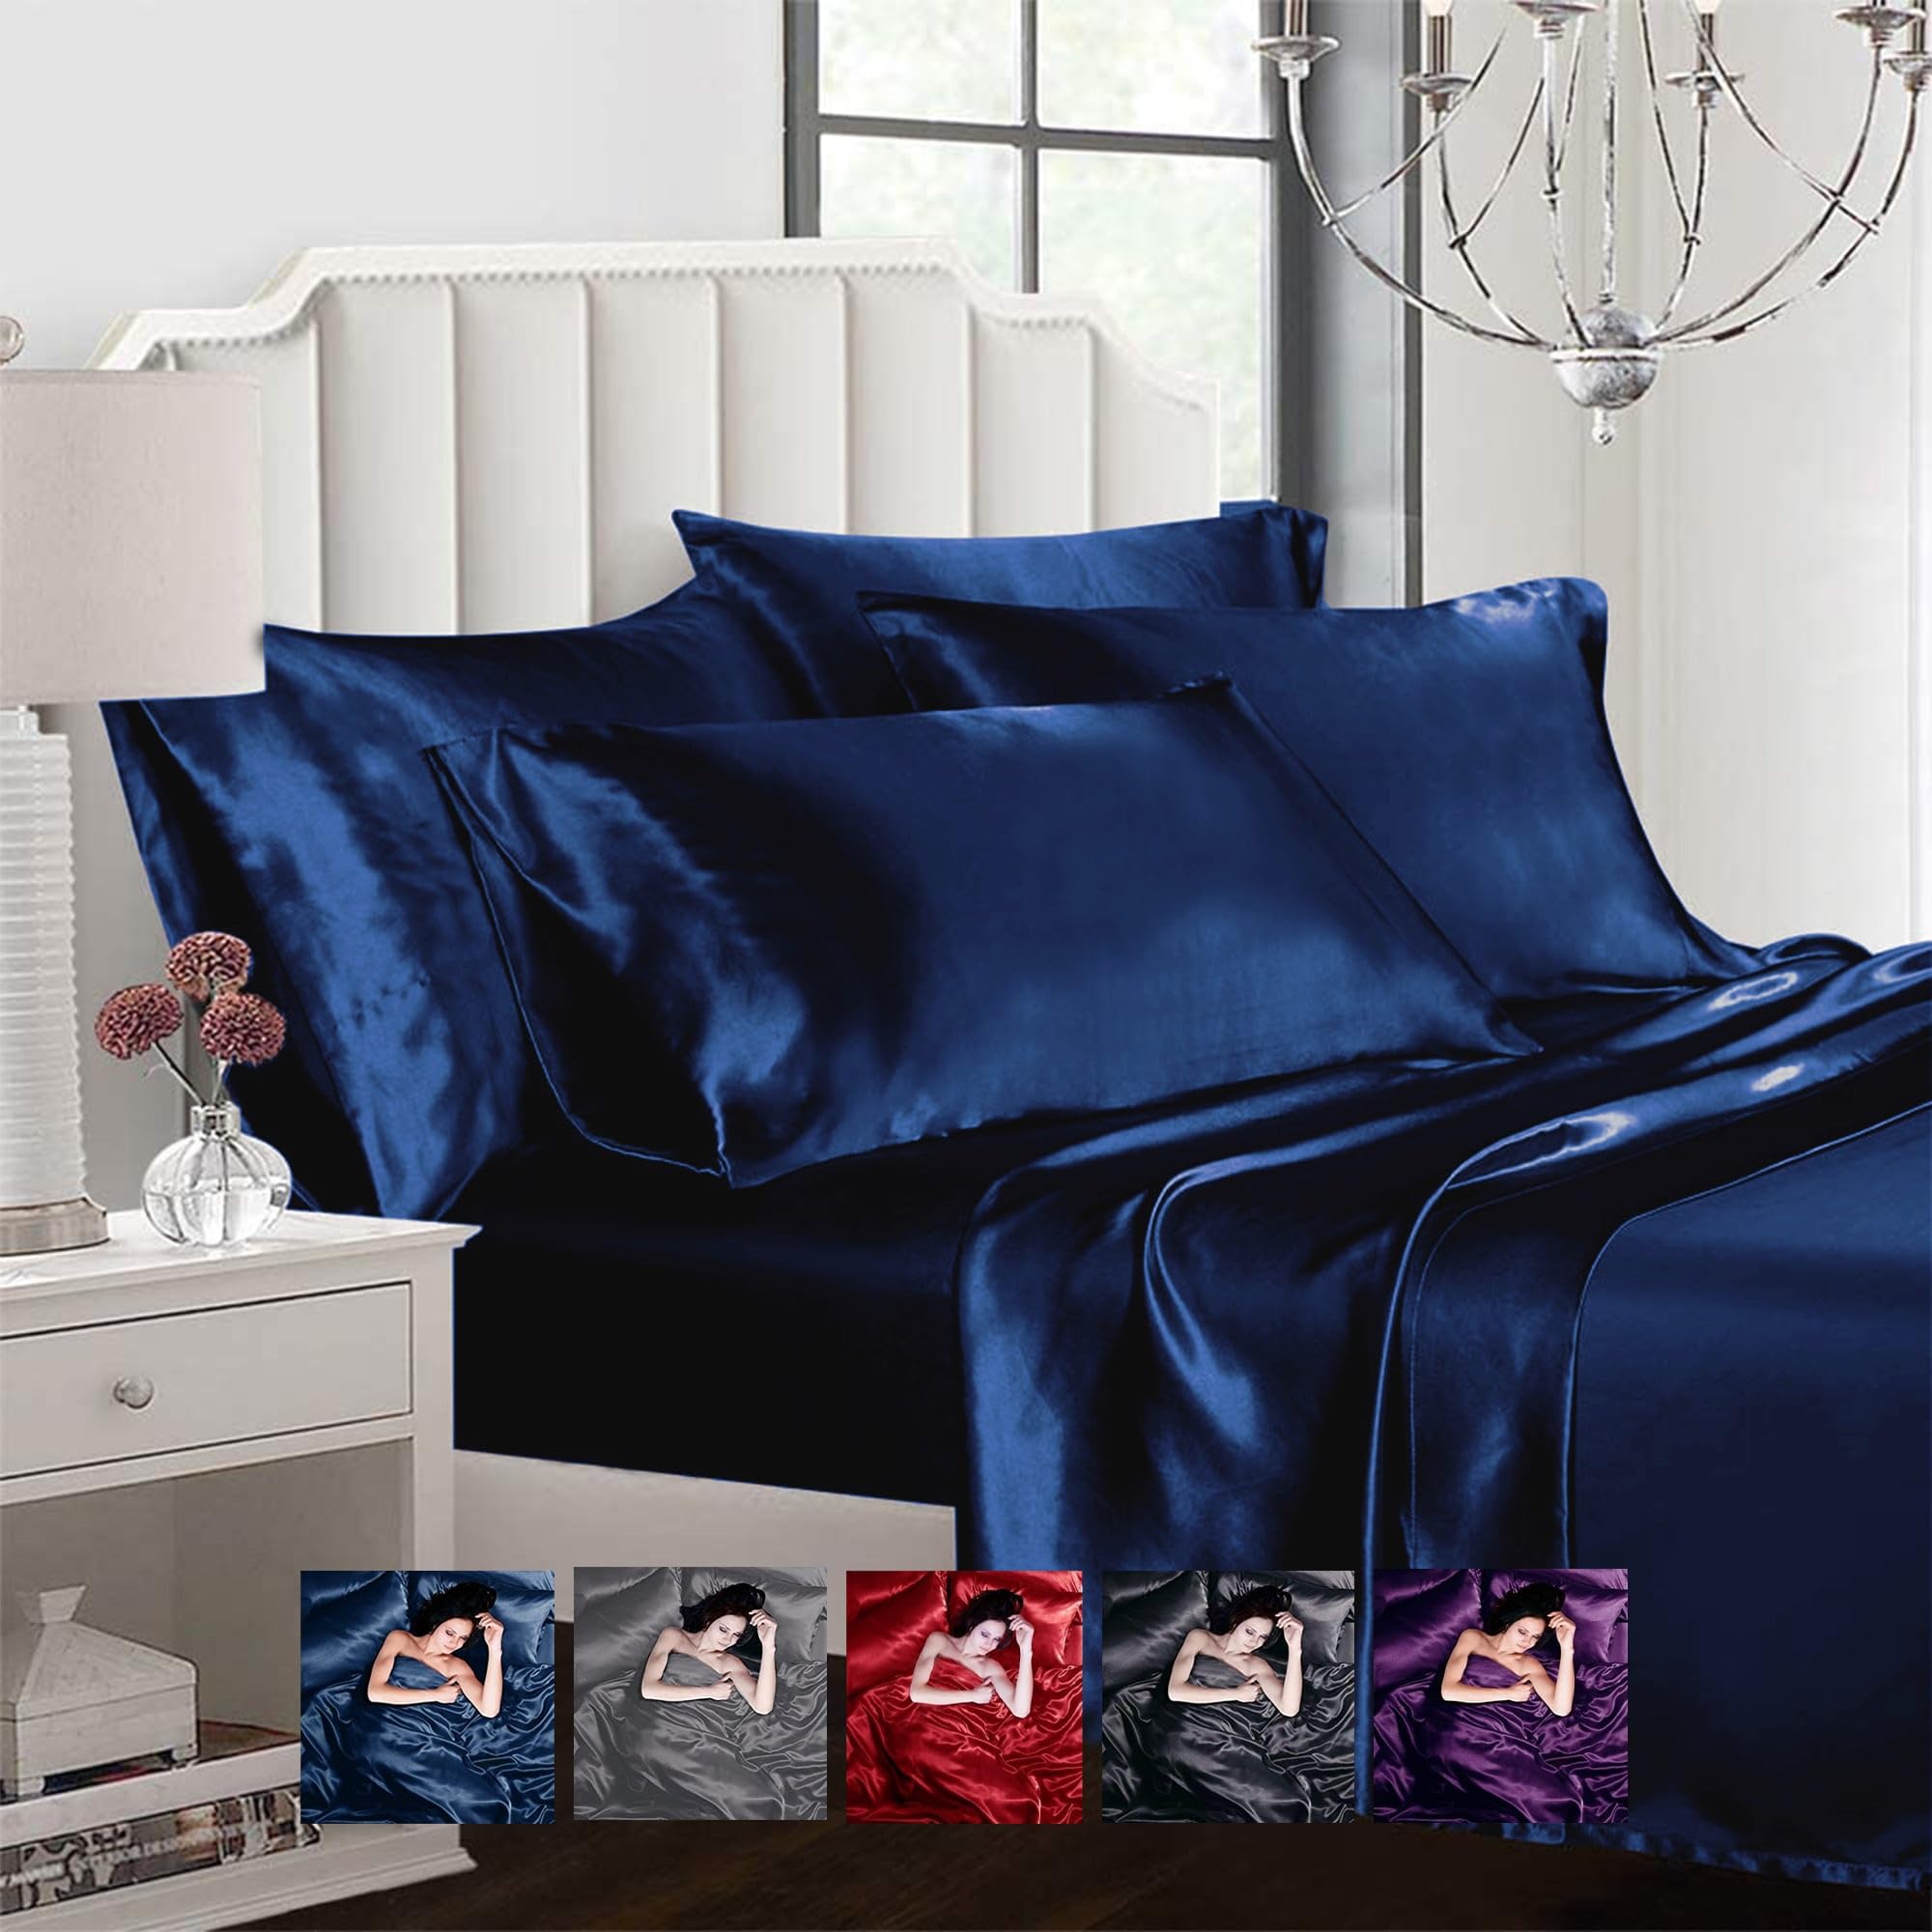 AL AHMEDANI LINEN Ahmedani Linen Sexy Satin Sheet 6 Pcs Queen Bedding Set 1 Duvet Cover + 1 Fitted Sheet + 4 Pillow Cases Navy Queen